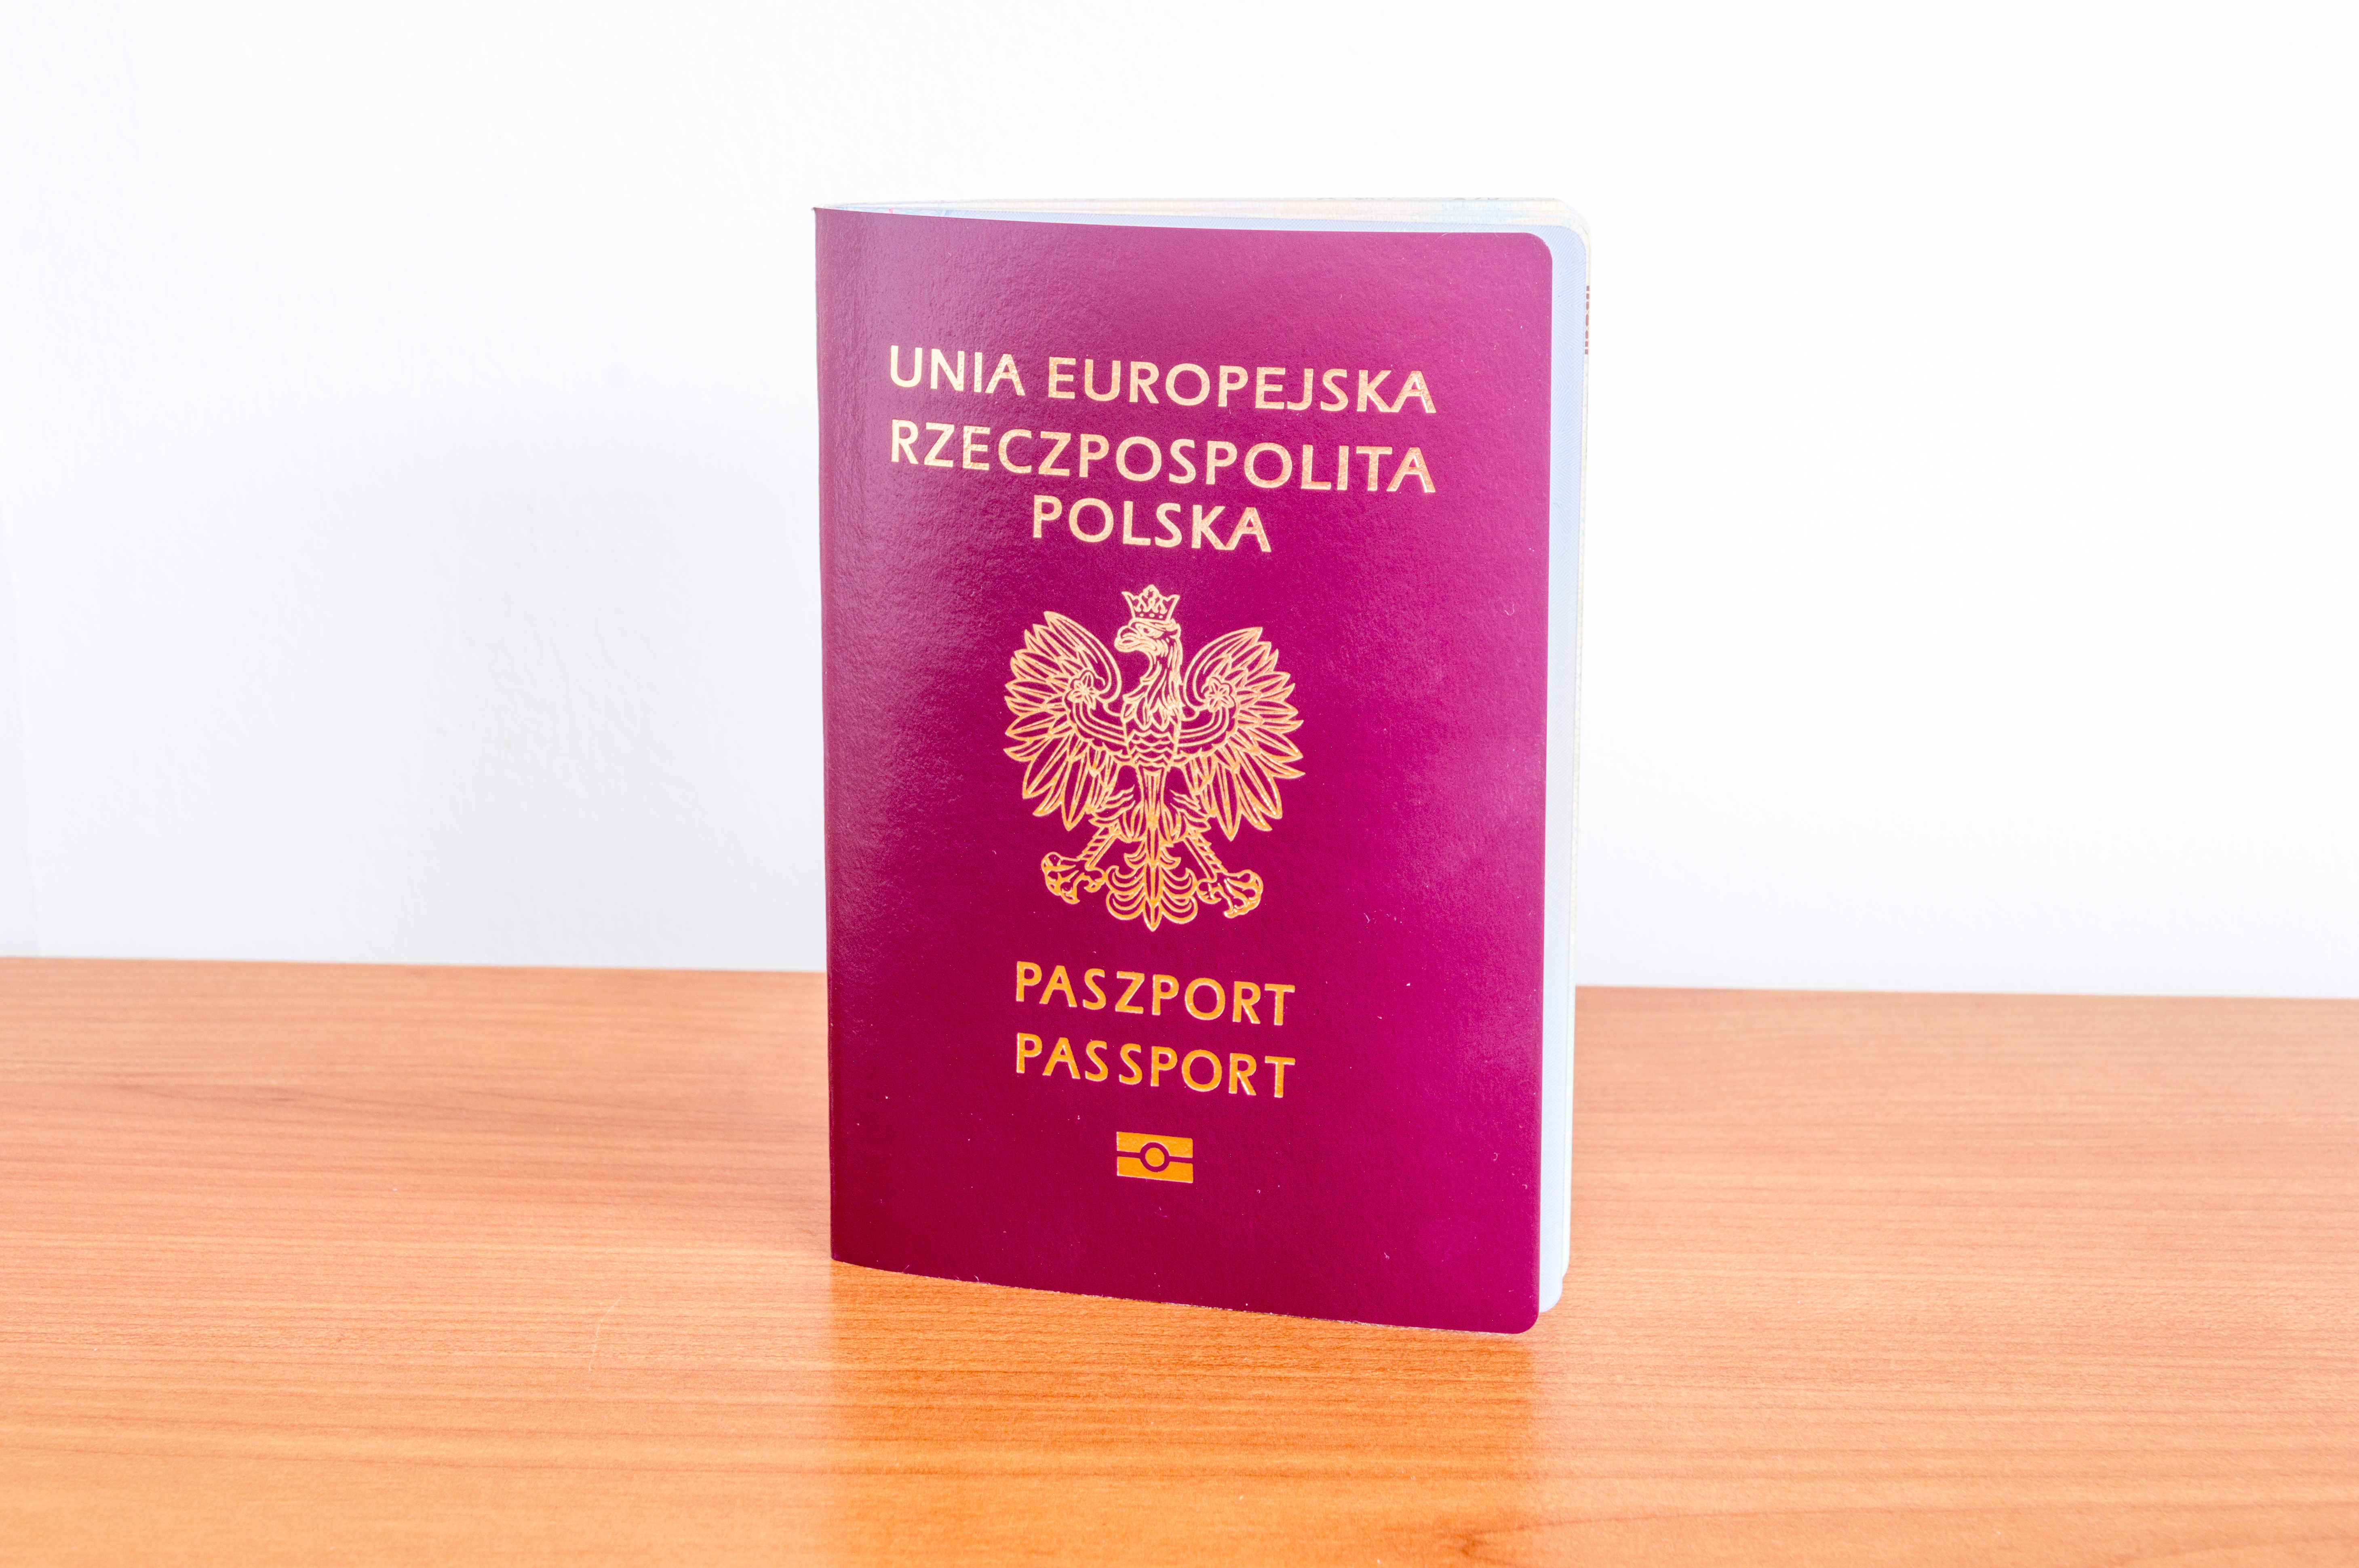 Как получить гражданство Польши россиянам, украинцам и белорусам?